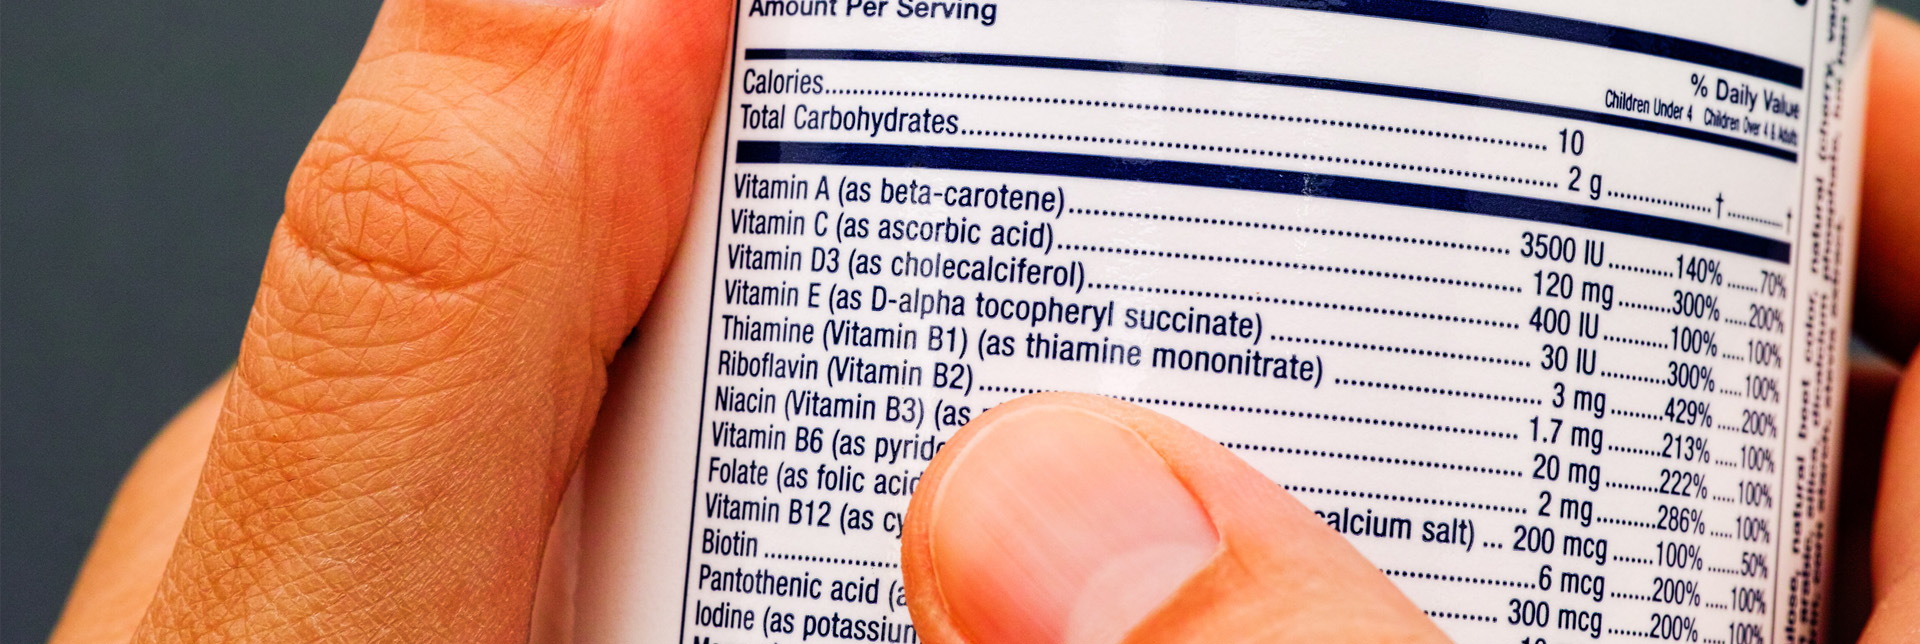 El etiquetado de vitaminas en los alimentos | ¿Qué quieren decir?